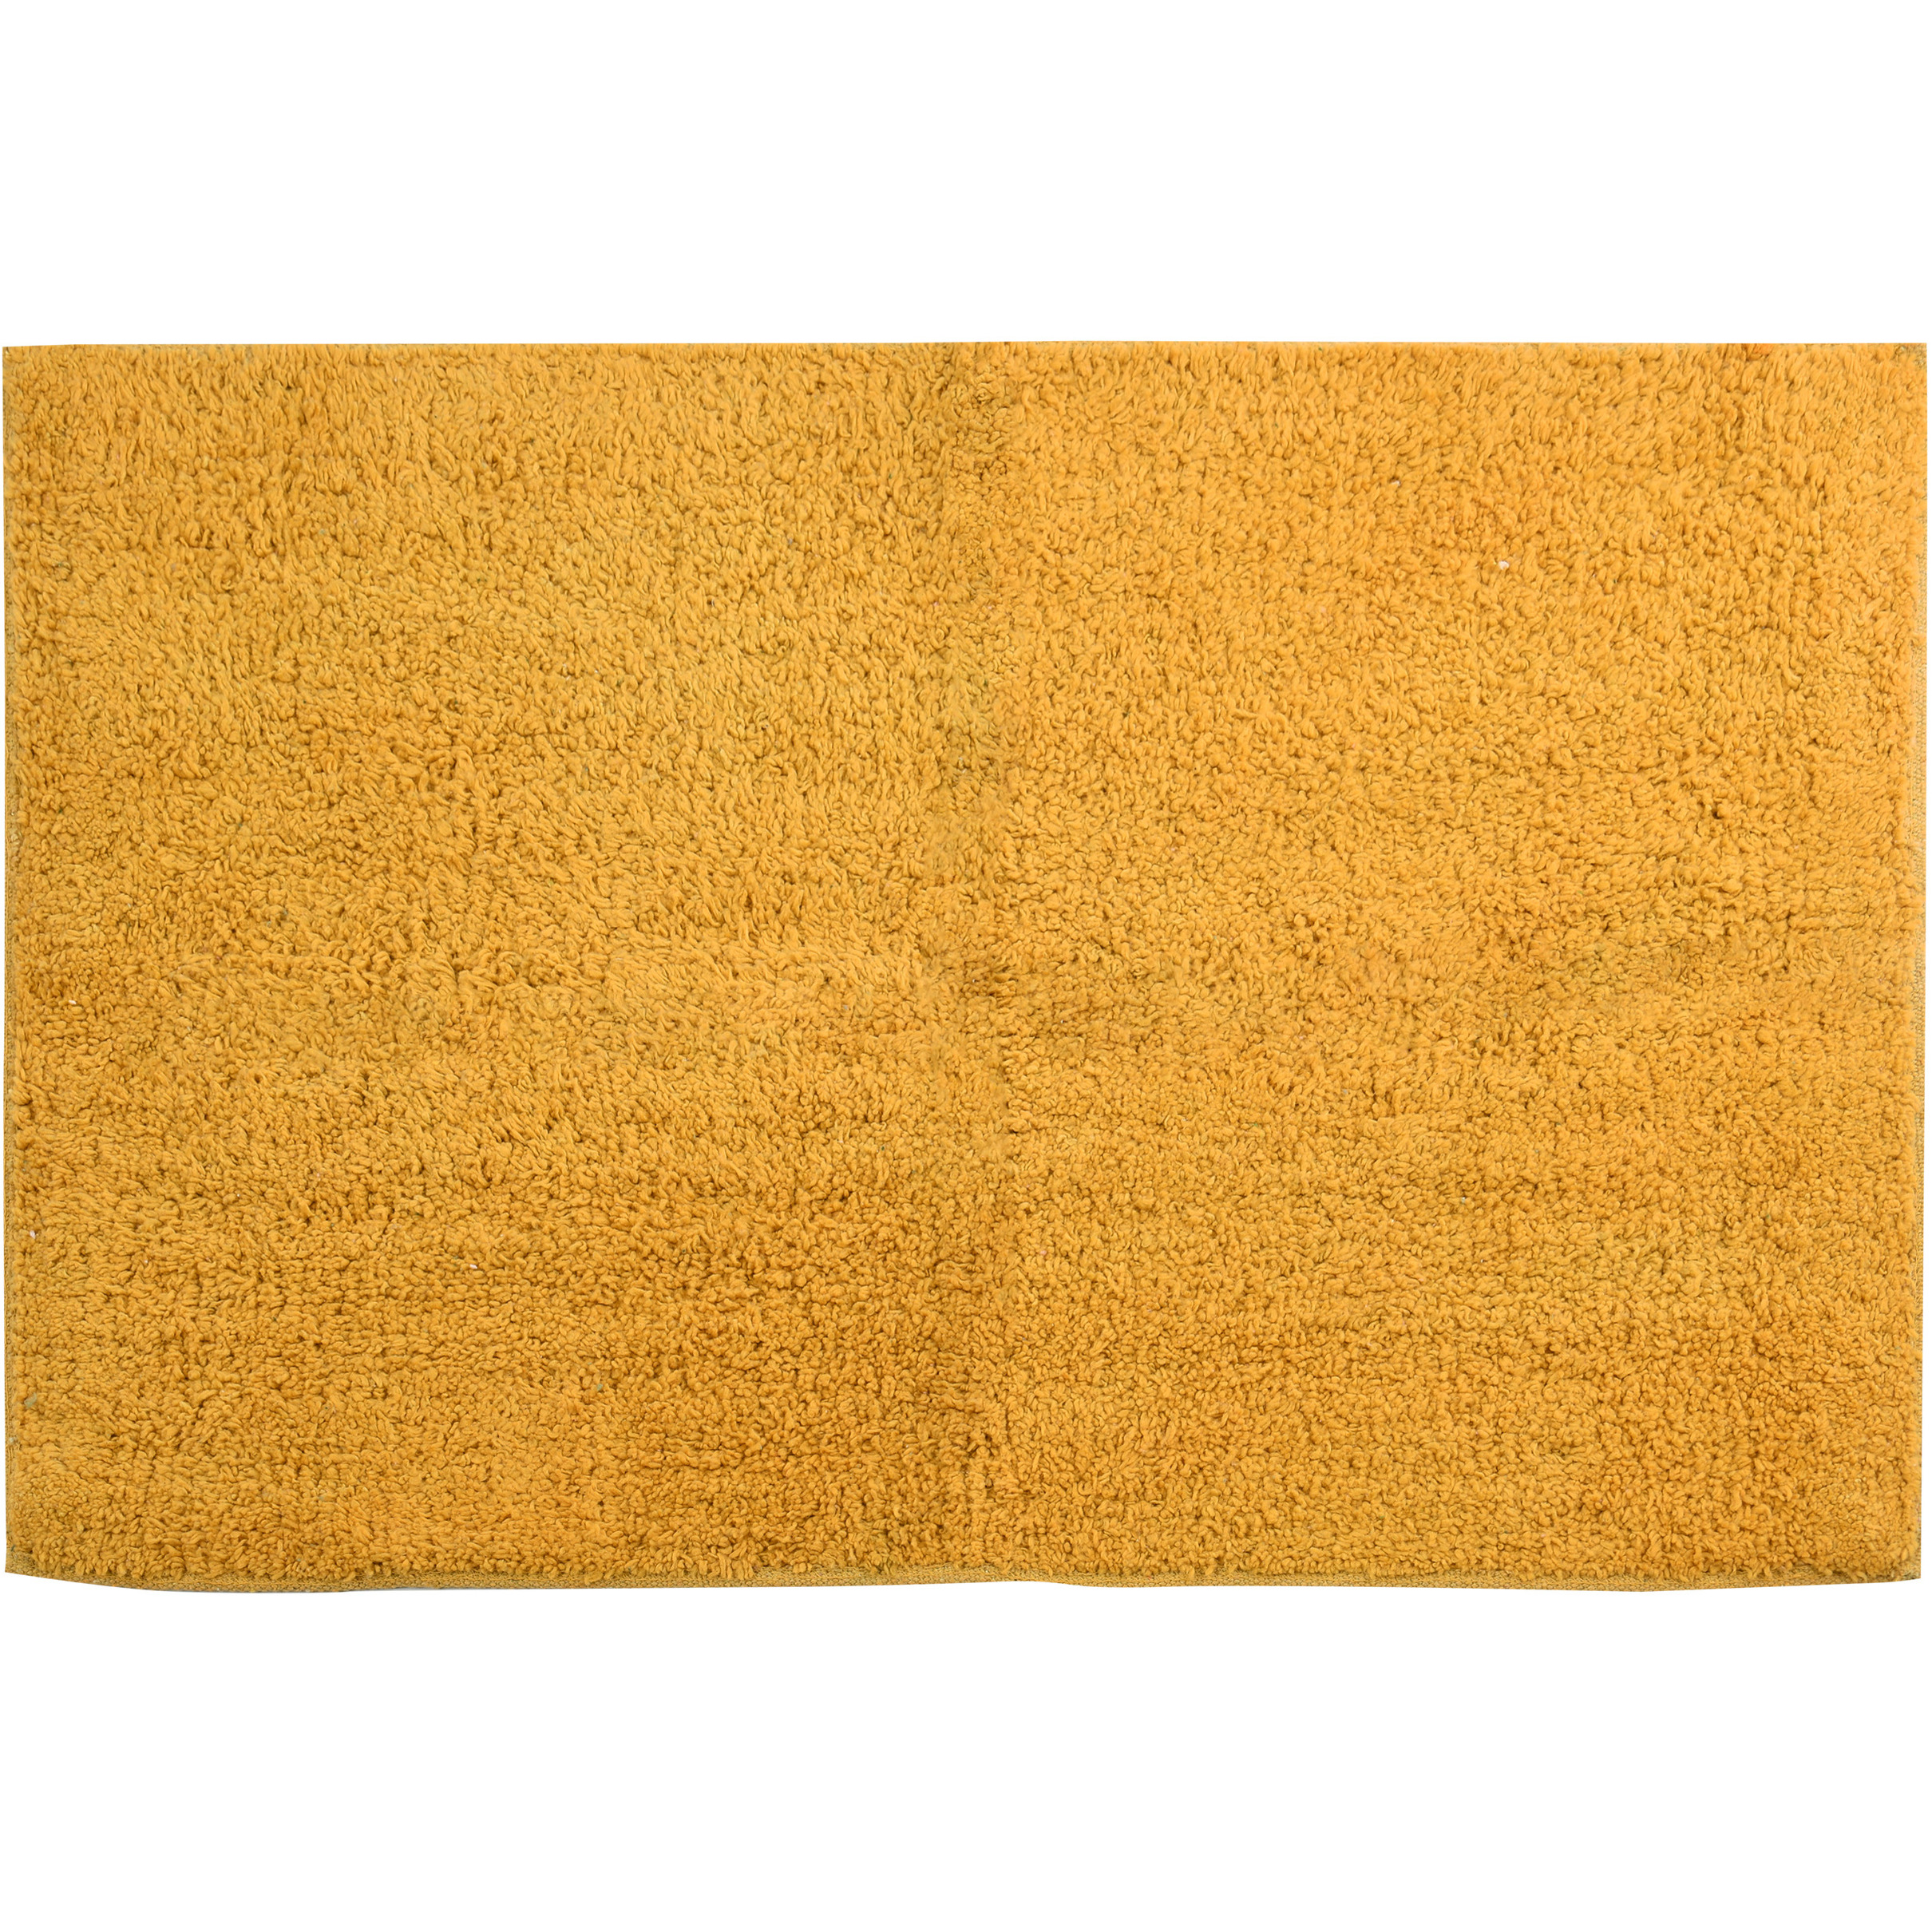 Badkamerkleedje-badmat tapijtje voor op de vloer saffraan geel 45 x 70 cm